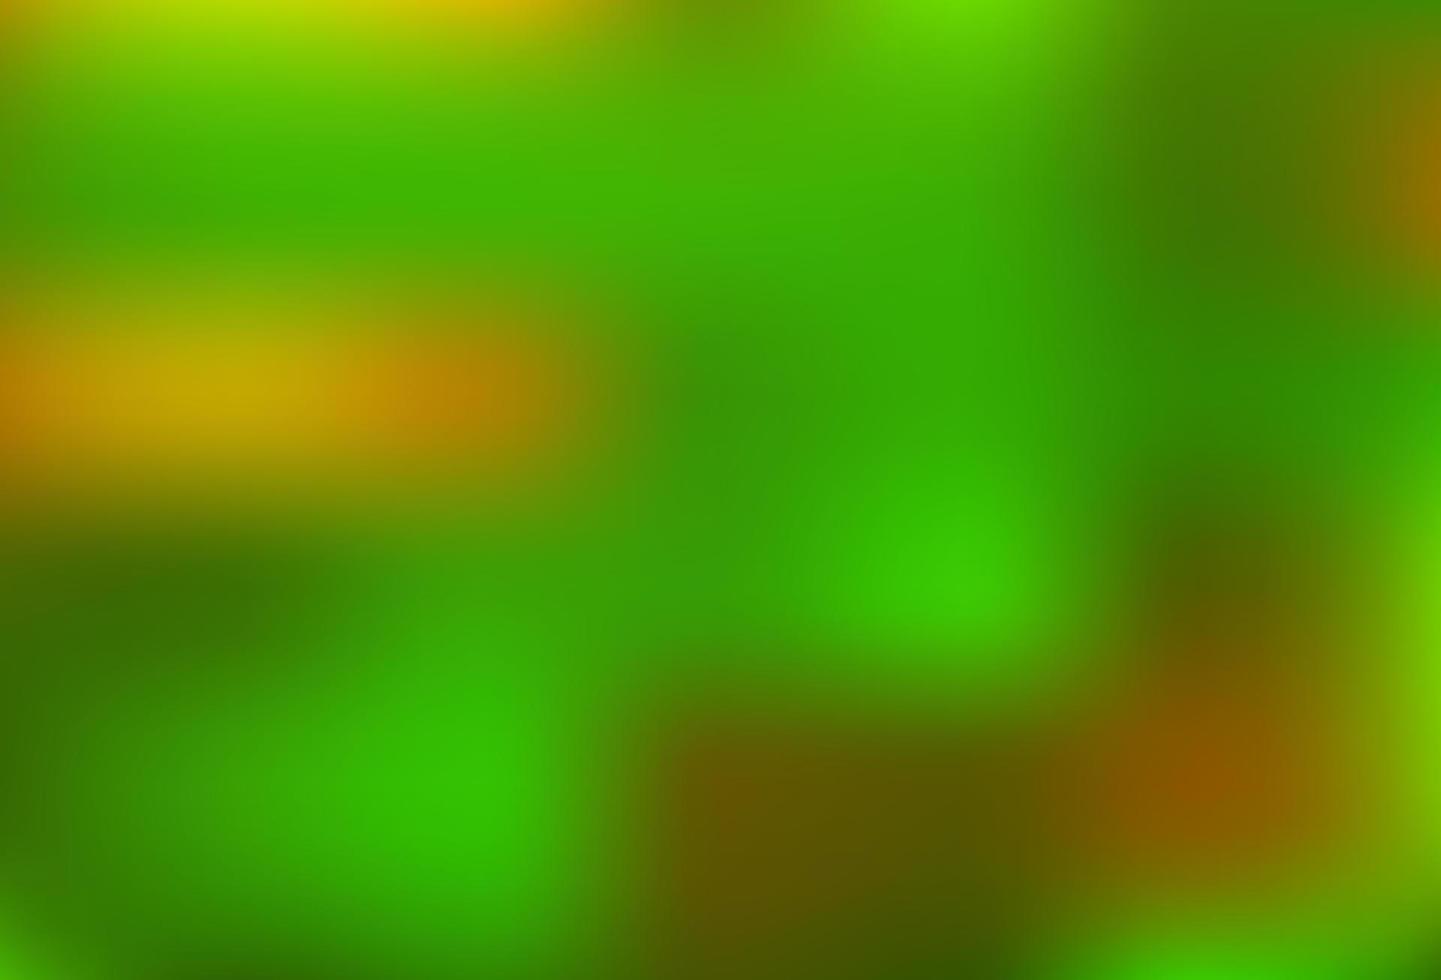 modello astratto di lucentezza sfocata vettoriale verde chiaro.